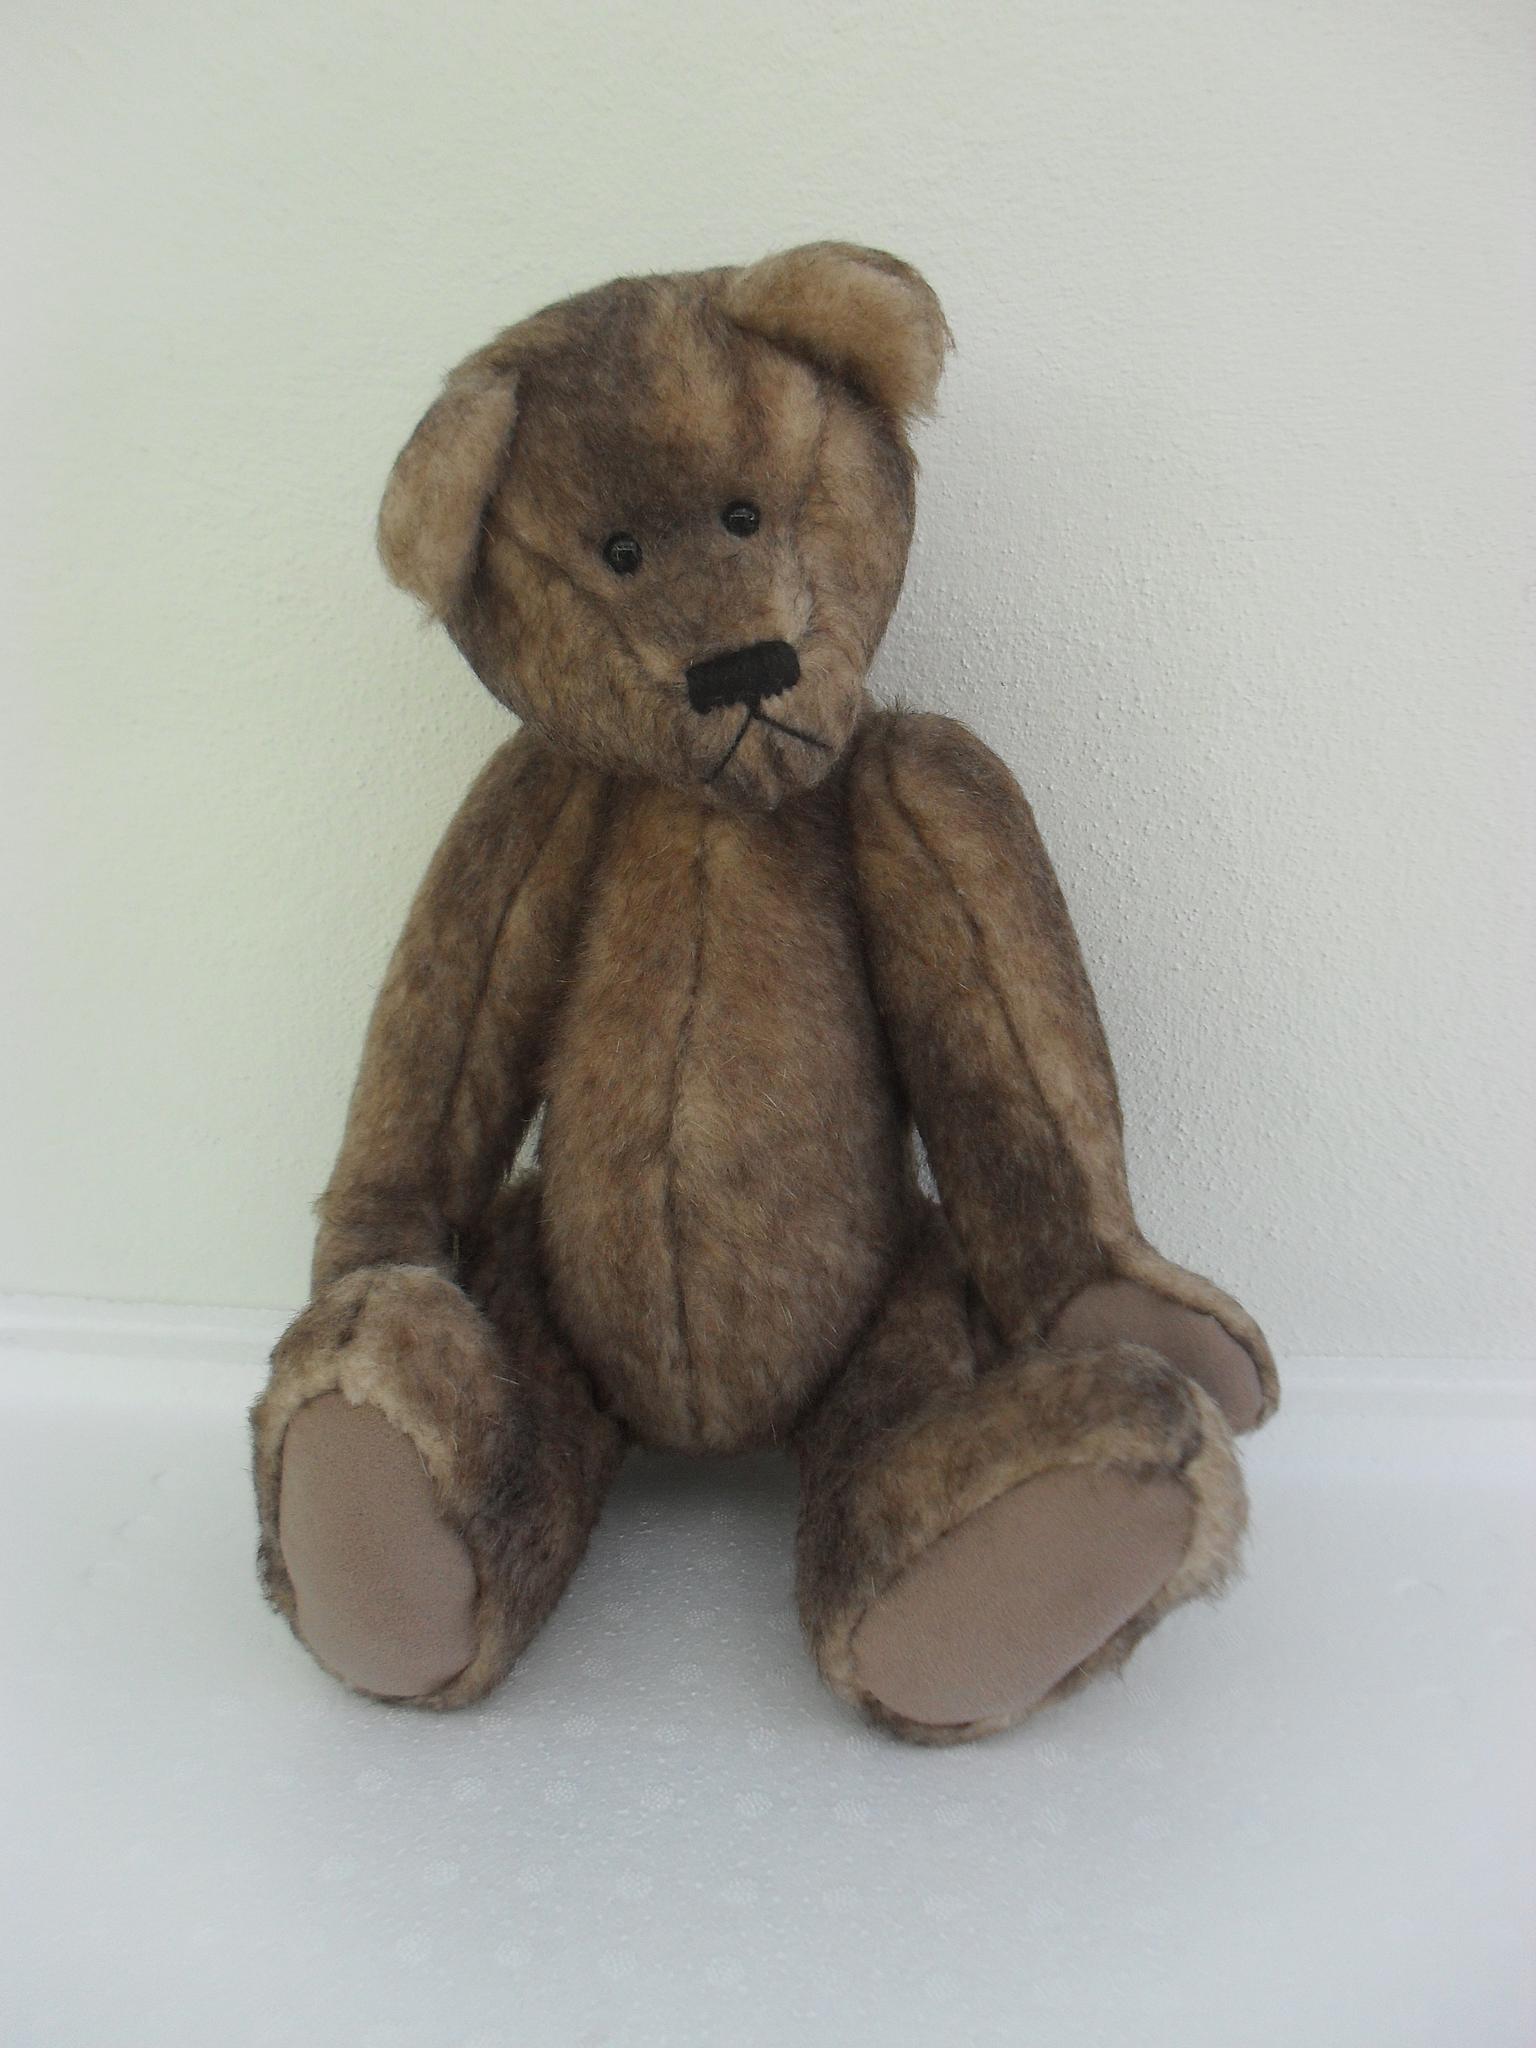 Australian Teddy Bear Co - Toby - Made in Australia